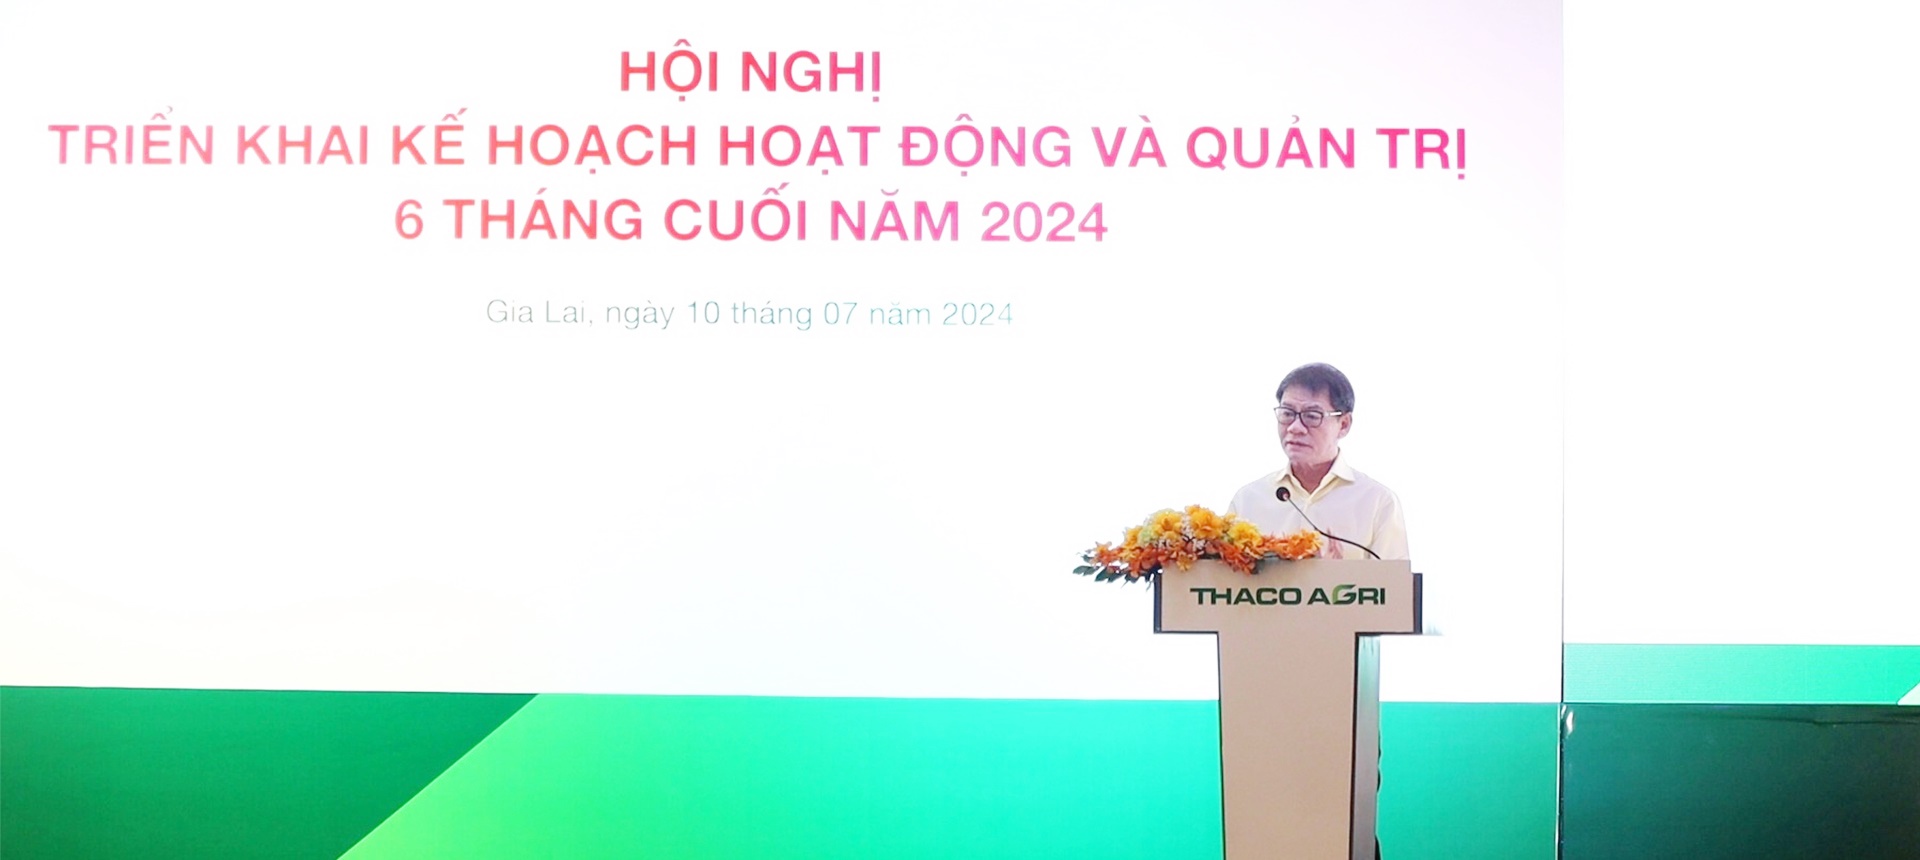 THACO AGRI tổ chức Hội nghị Triển khai kế hoạch hoạt động và quản trị 6 tháng cuối năm 2024